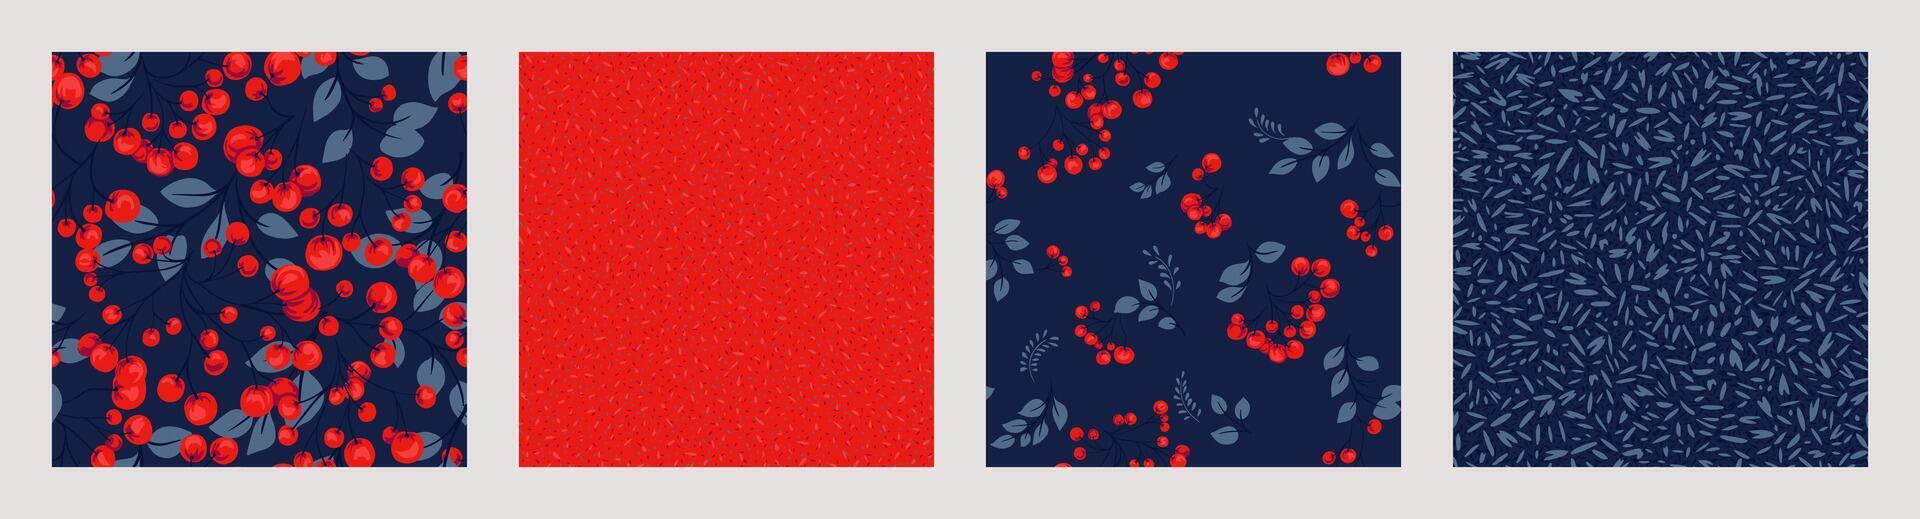 ljus röd collage av uppsättning sömlös mönster med stiliserade grenar bär, kreativ former enbär, buxbom, Viburnum, berberis, abstrakt skriva ut, slumpmässig fläckar, polka prickar. vektor hand dragen skiss.